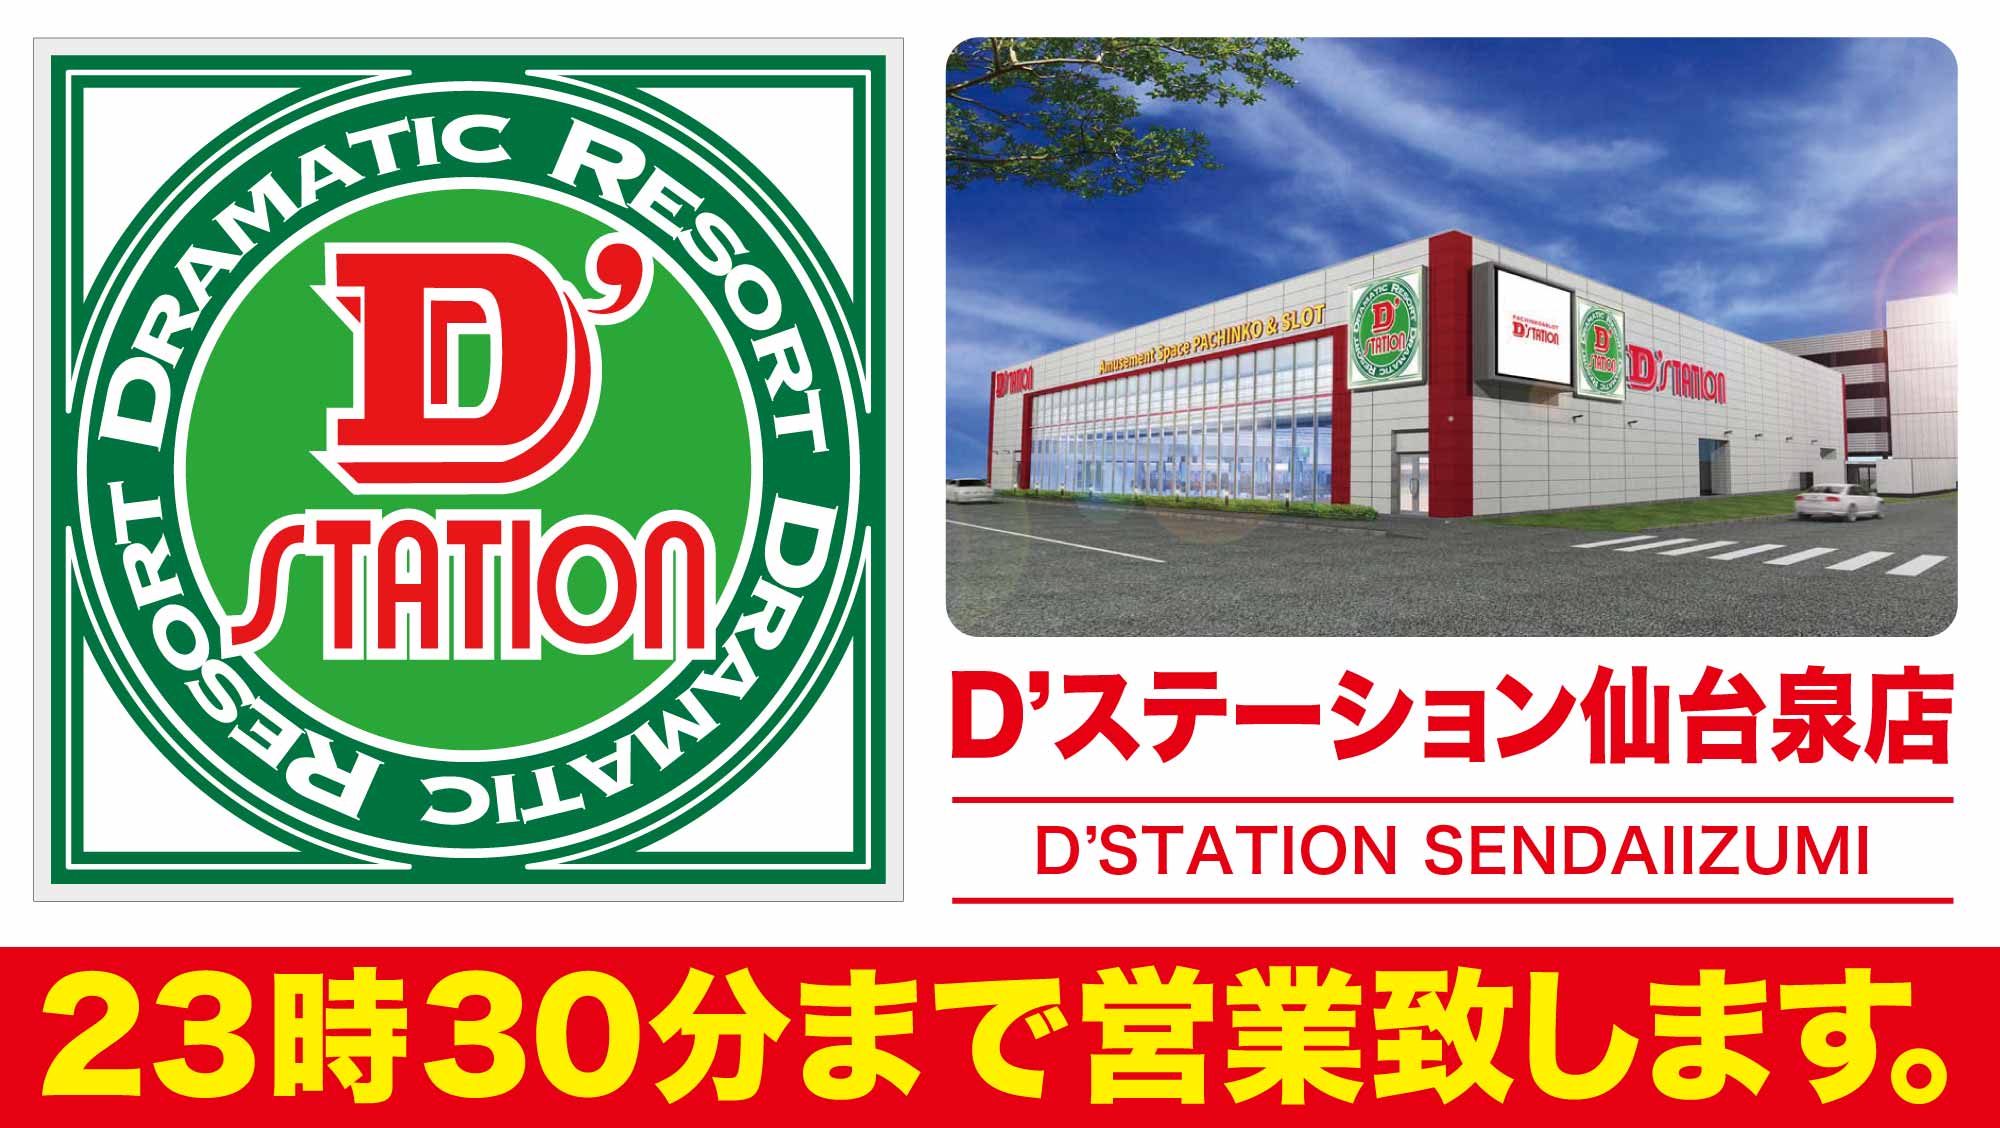 D’station仙台泉店の屋号とパース図